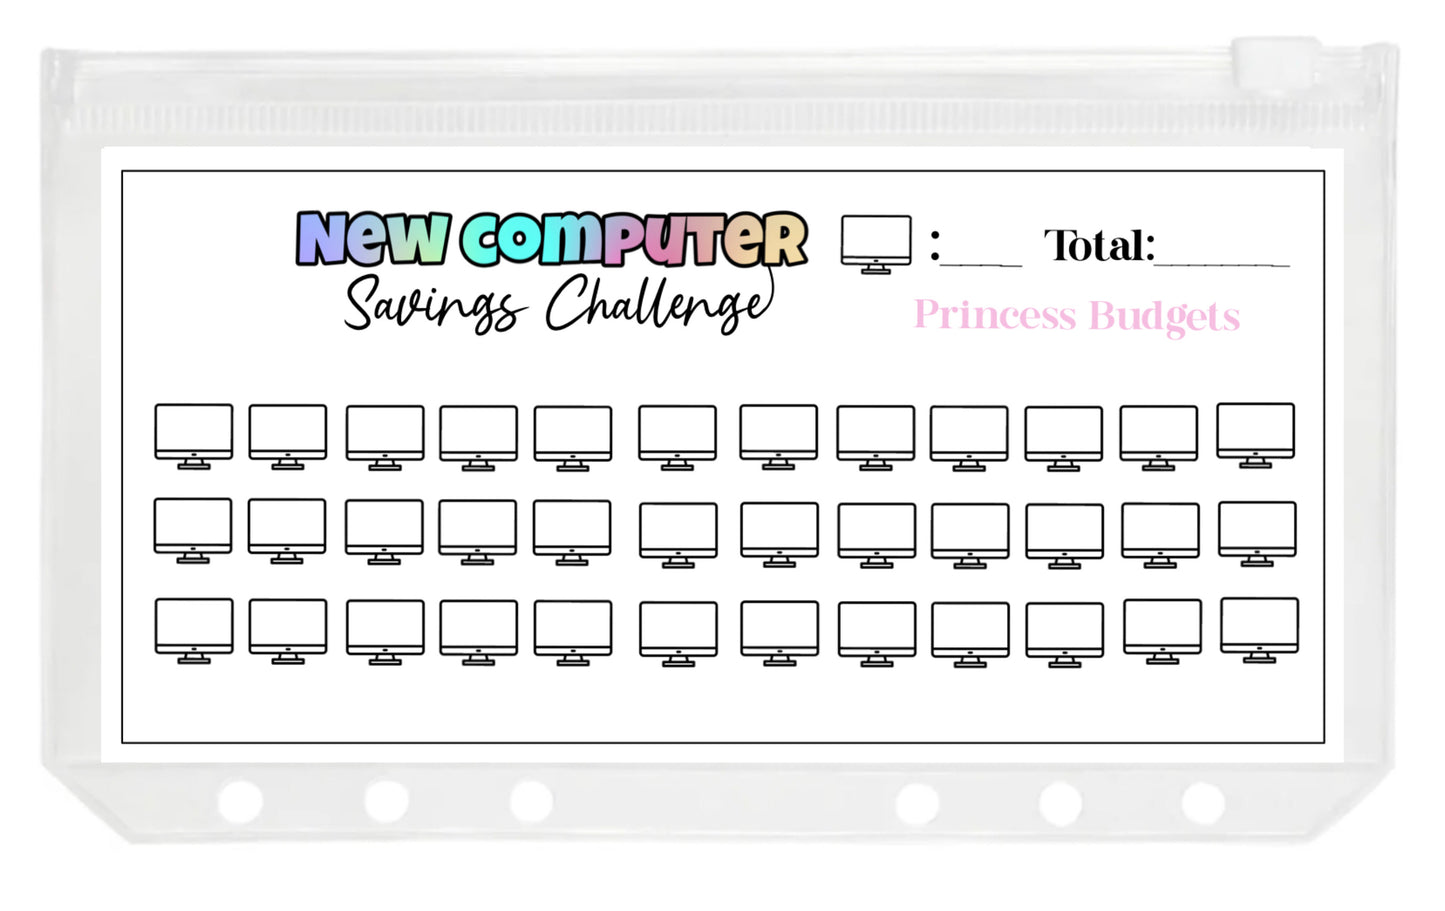 New Computer Savings Challenge